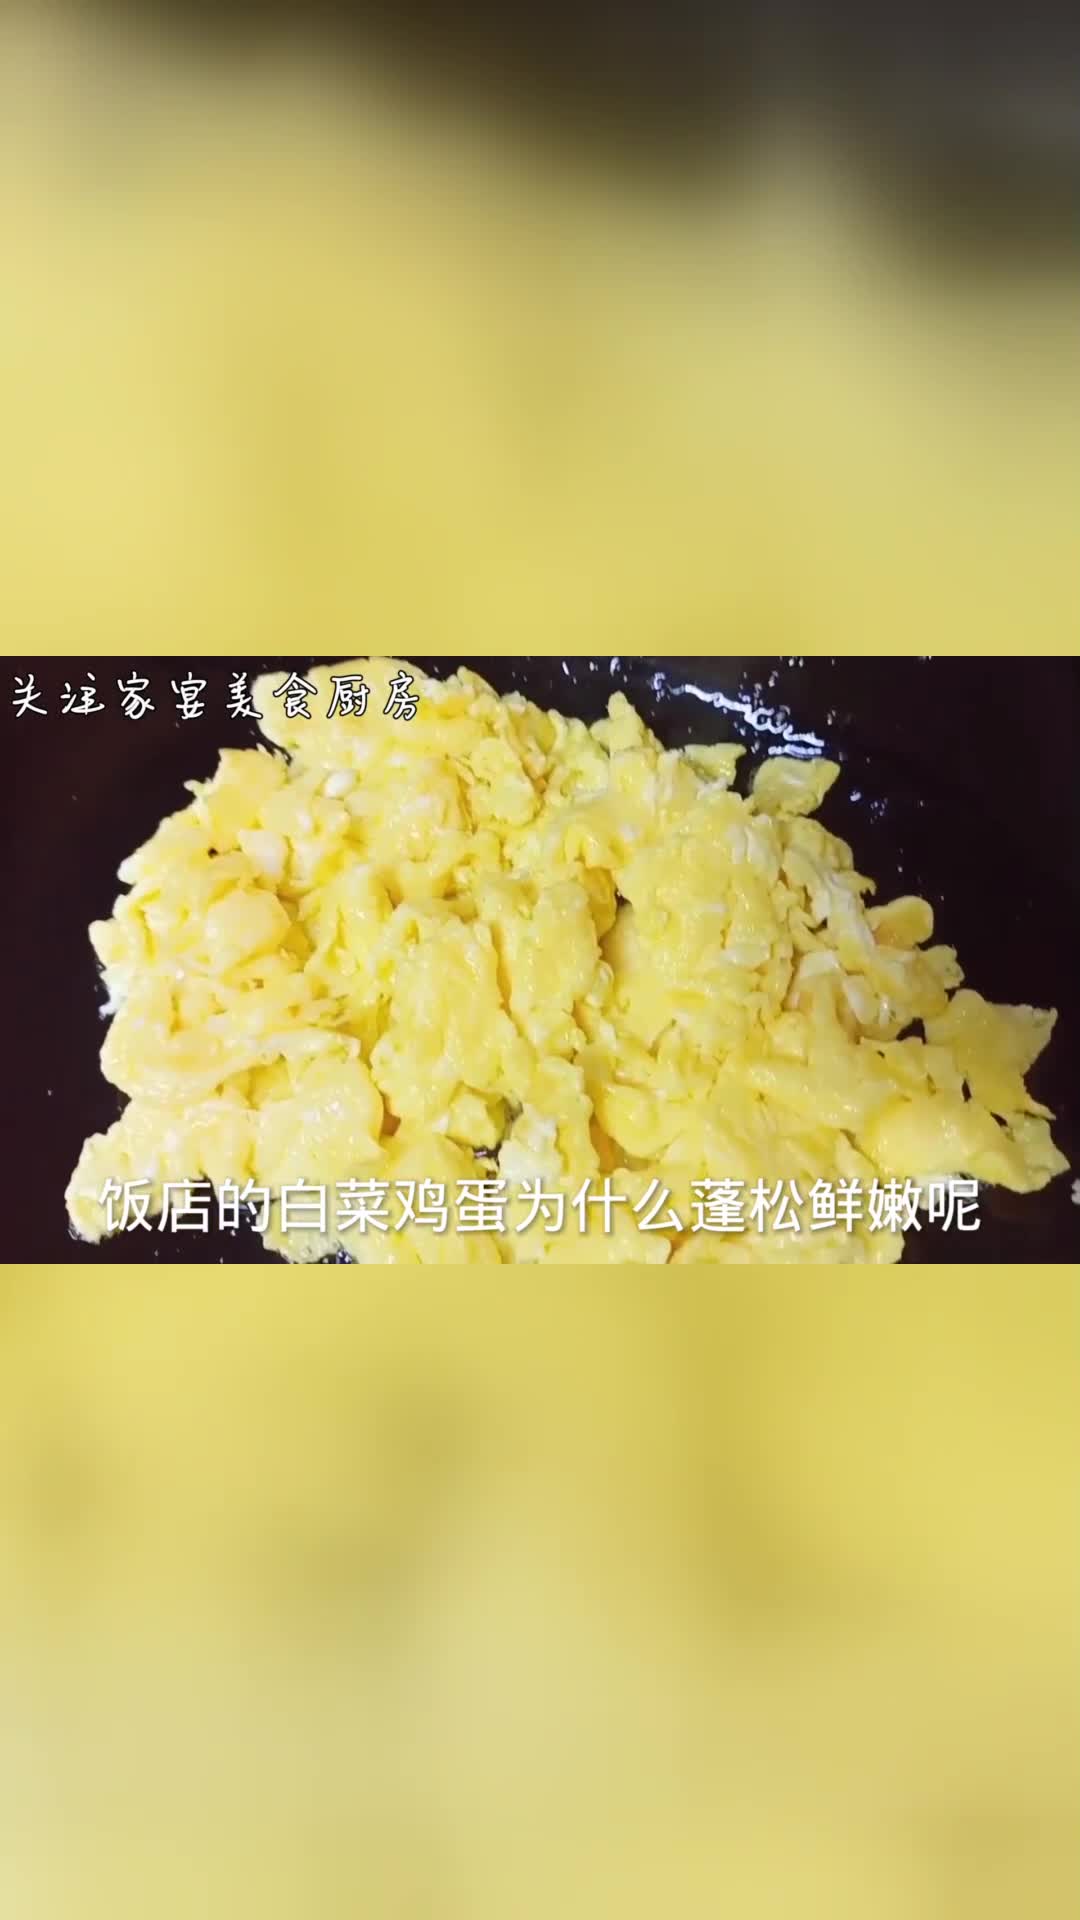 饭店的白菜鸡蛋为什么那么嫩技巧全在视频里，看大厨的操作方法